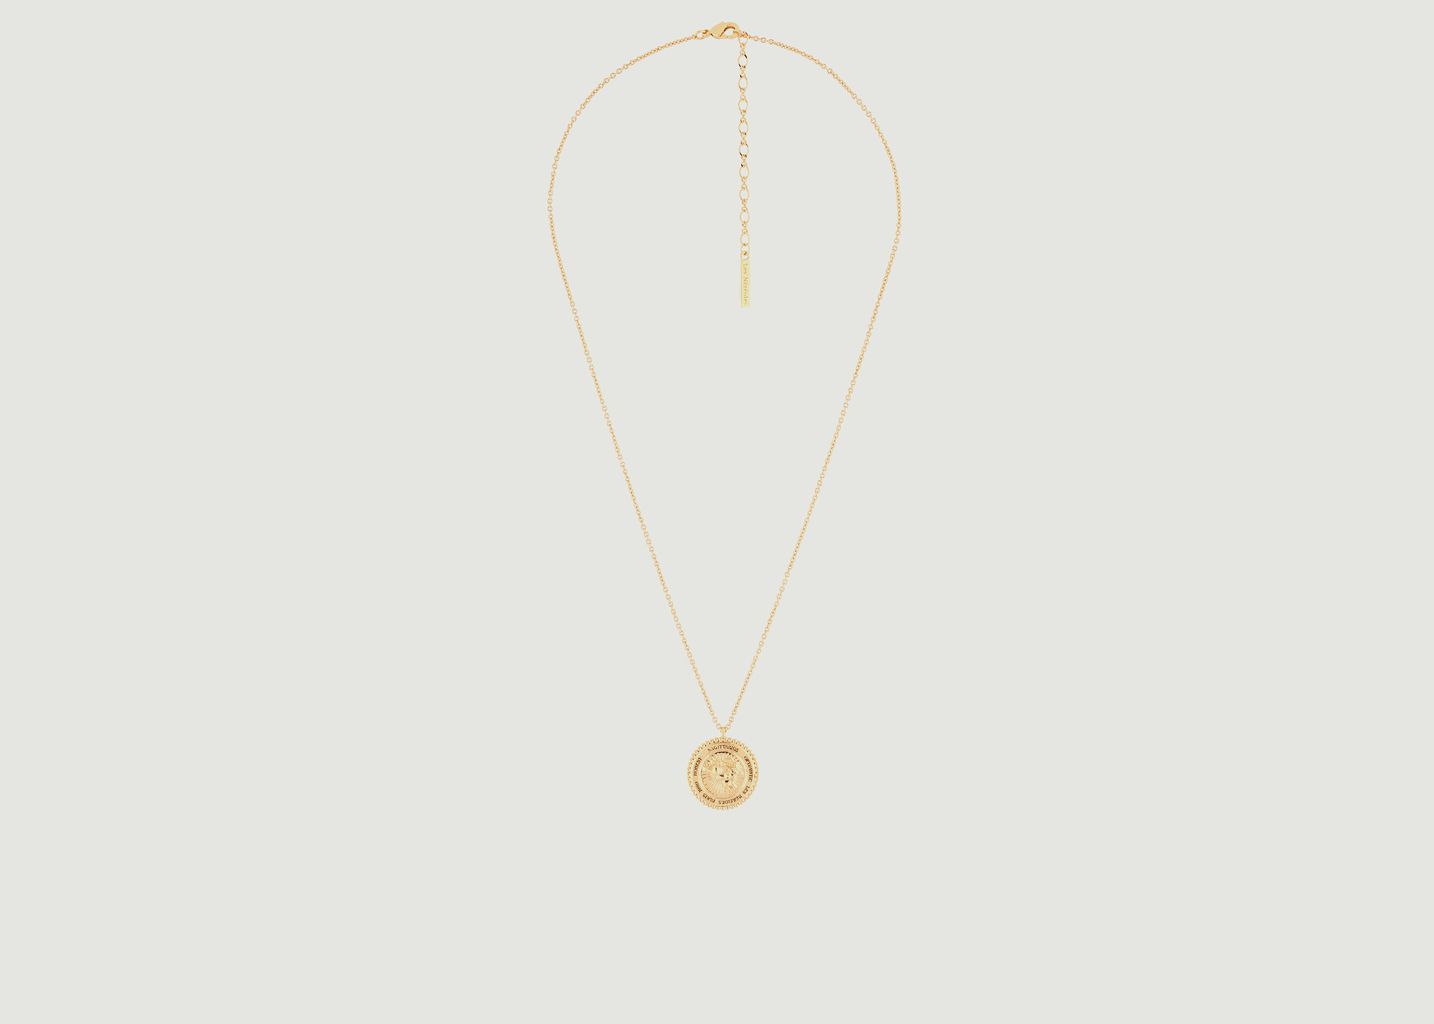 Sagittarius astrological sign necklace with pendant - Les Néréides